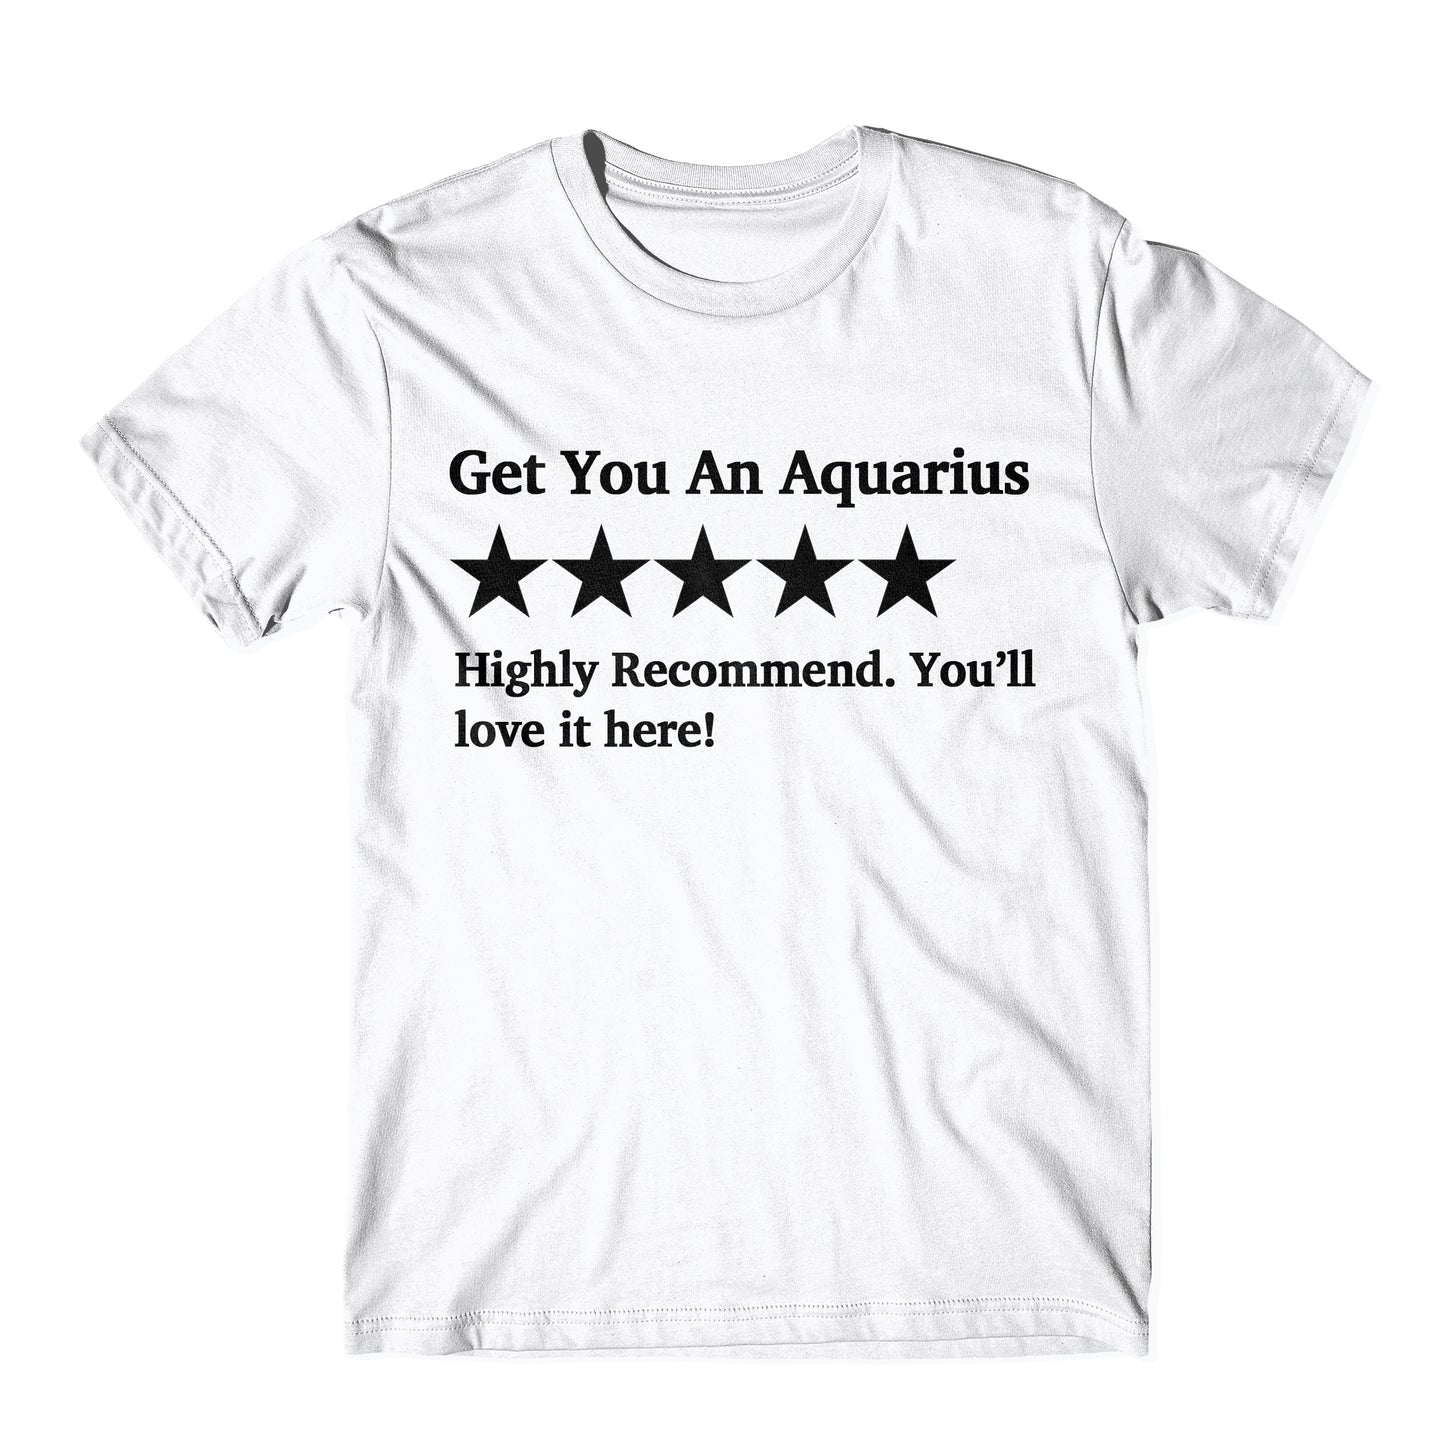 "Get You An Aquarius Five Star Rating" Tee